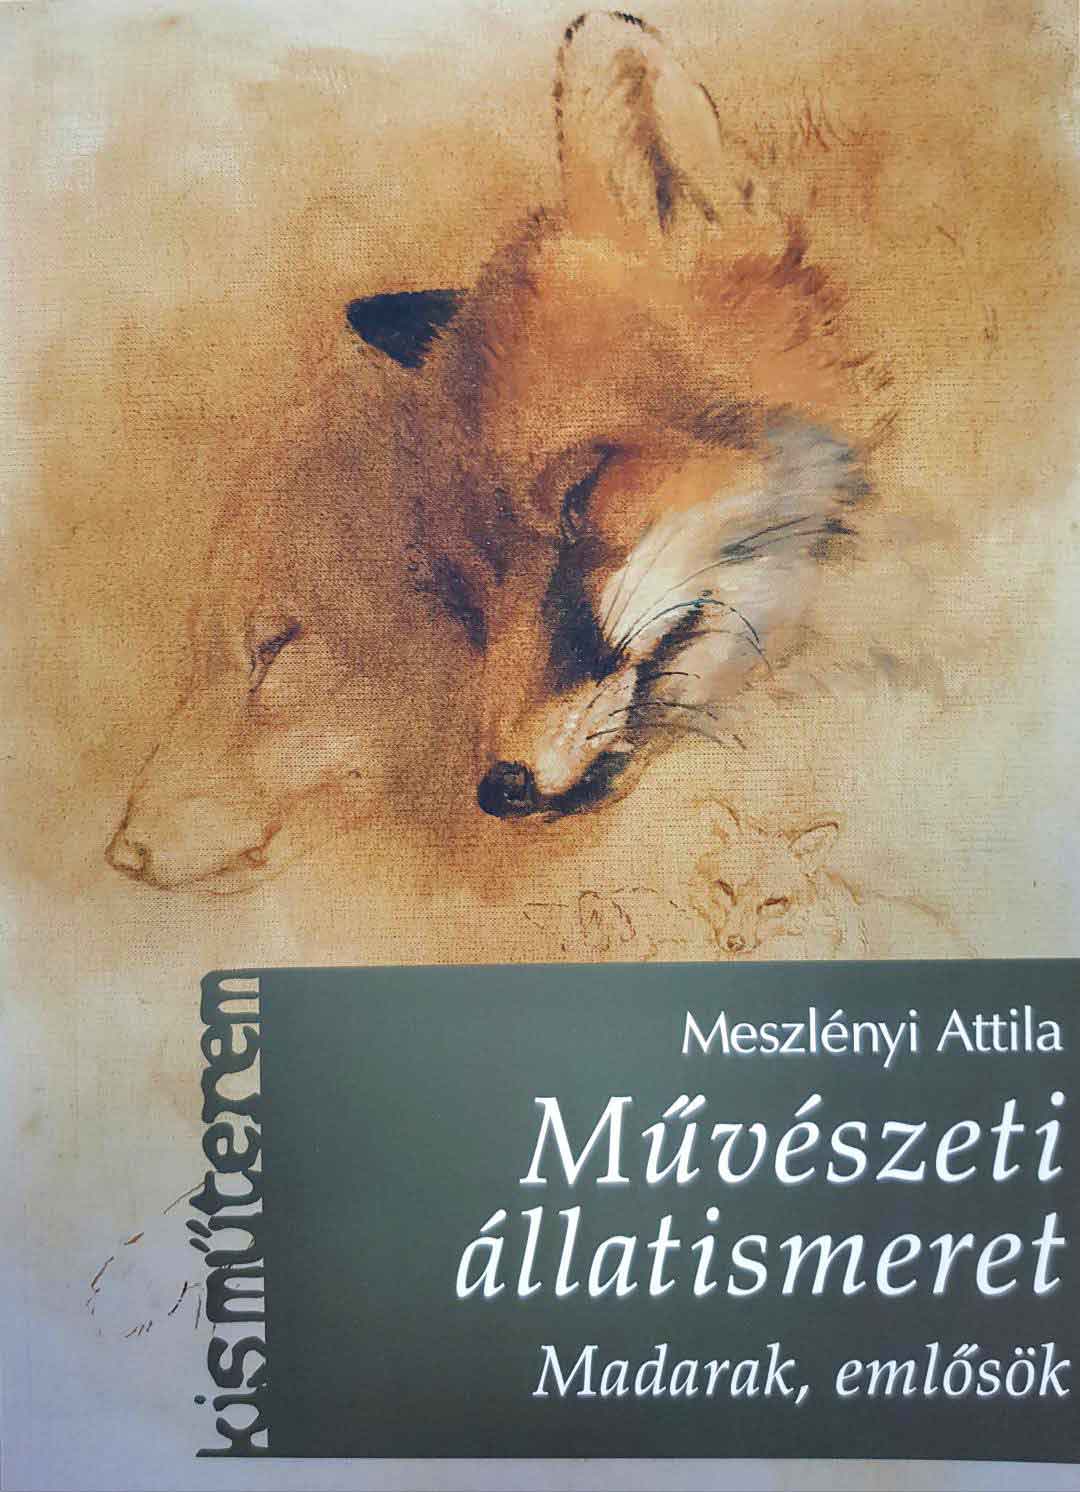 Meszlényi Attila, vadászkönyv